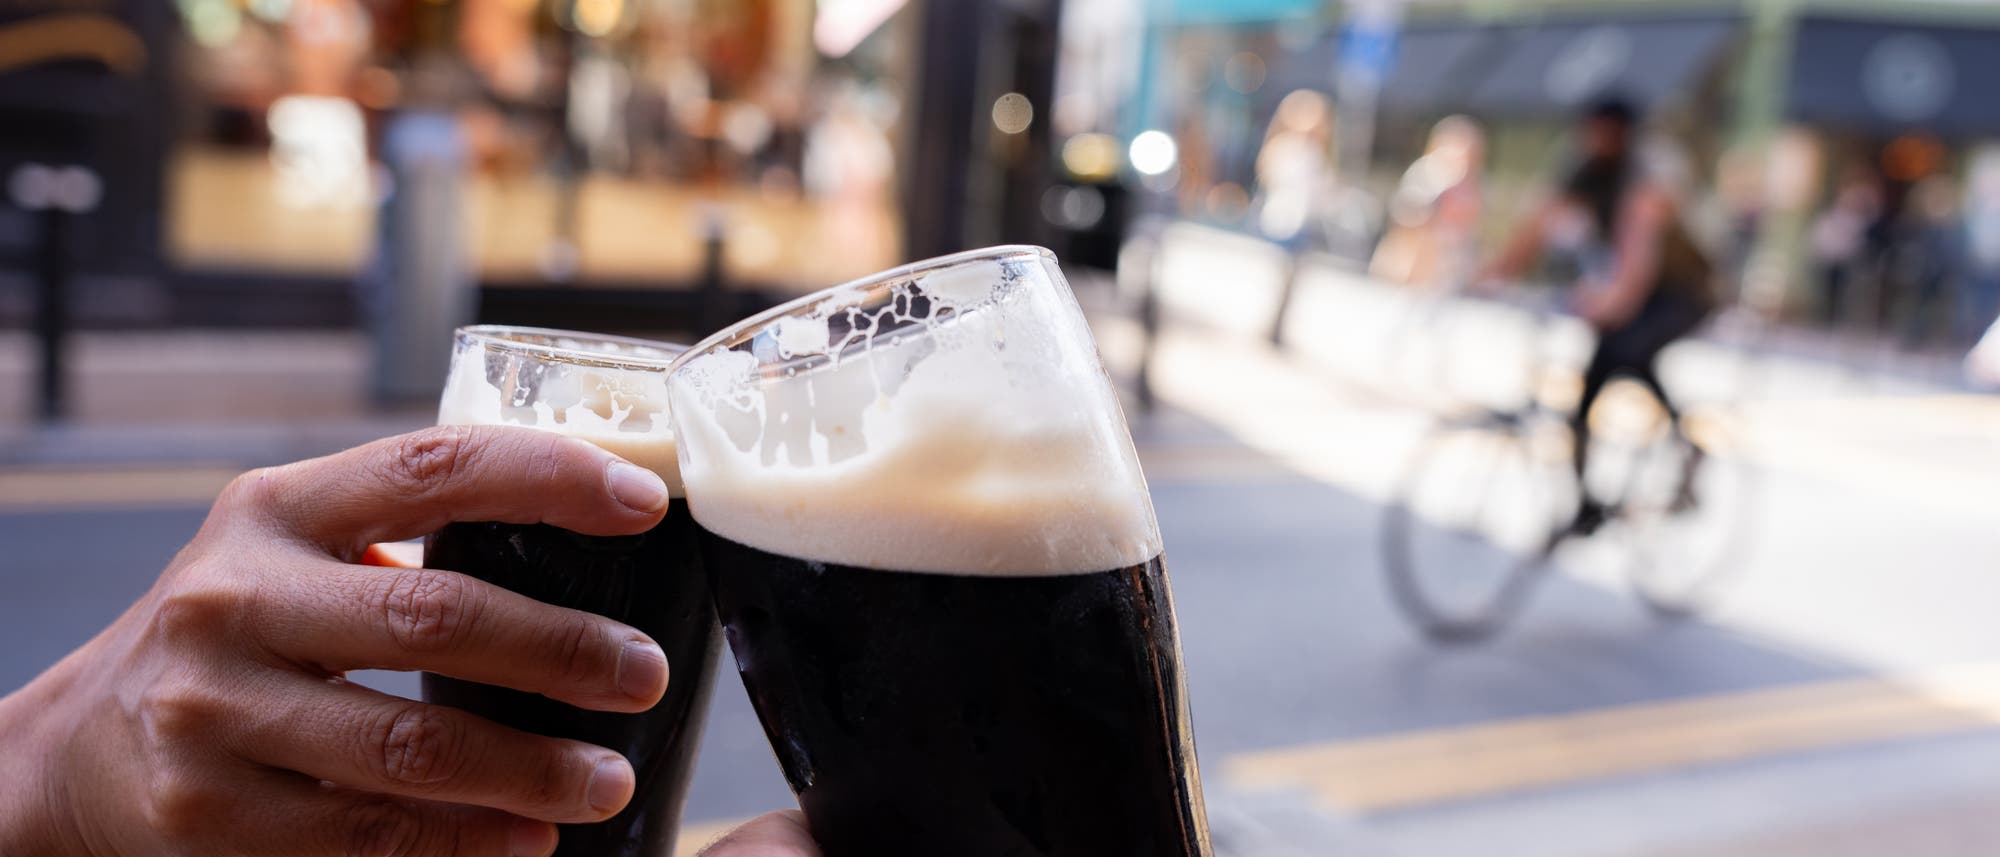 Zwei Personen stoßen im Freien bei gutem Wetter mit einem Guinness-Bier an, im Hintergrund sind Geschäfte und Passanten in Unschärfe zu sehen.